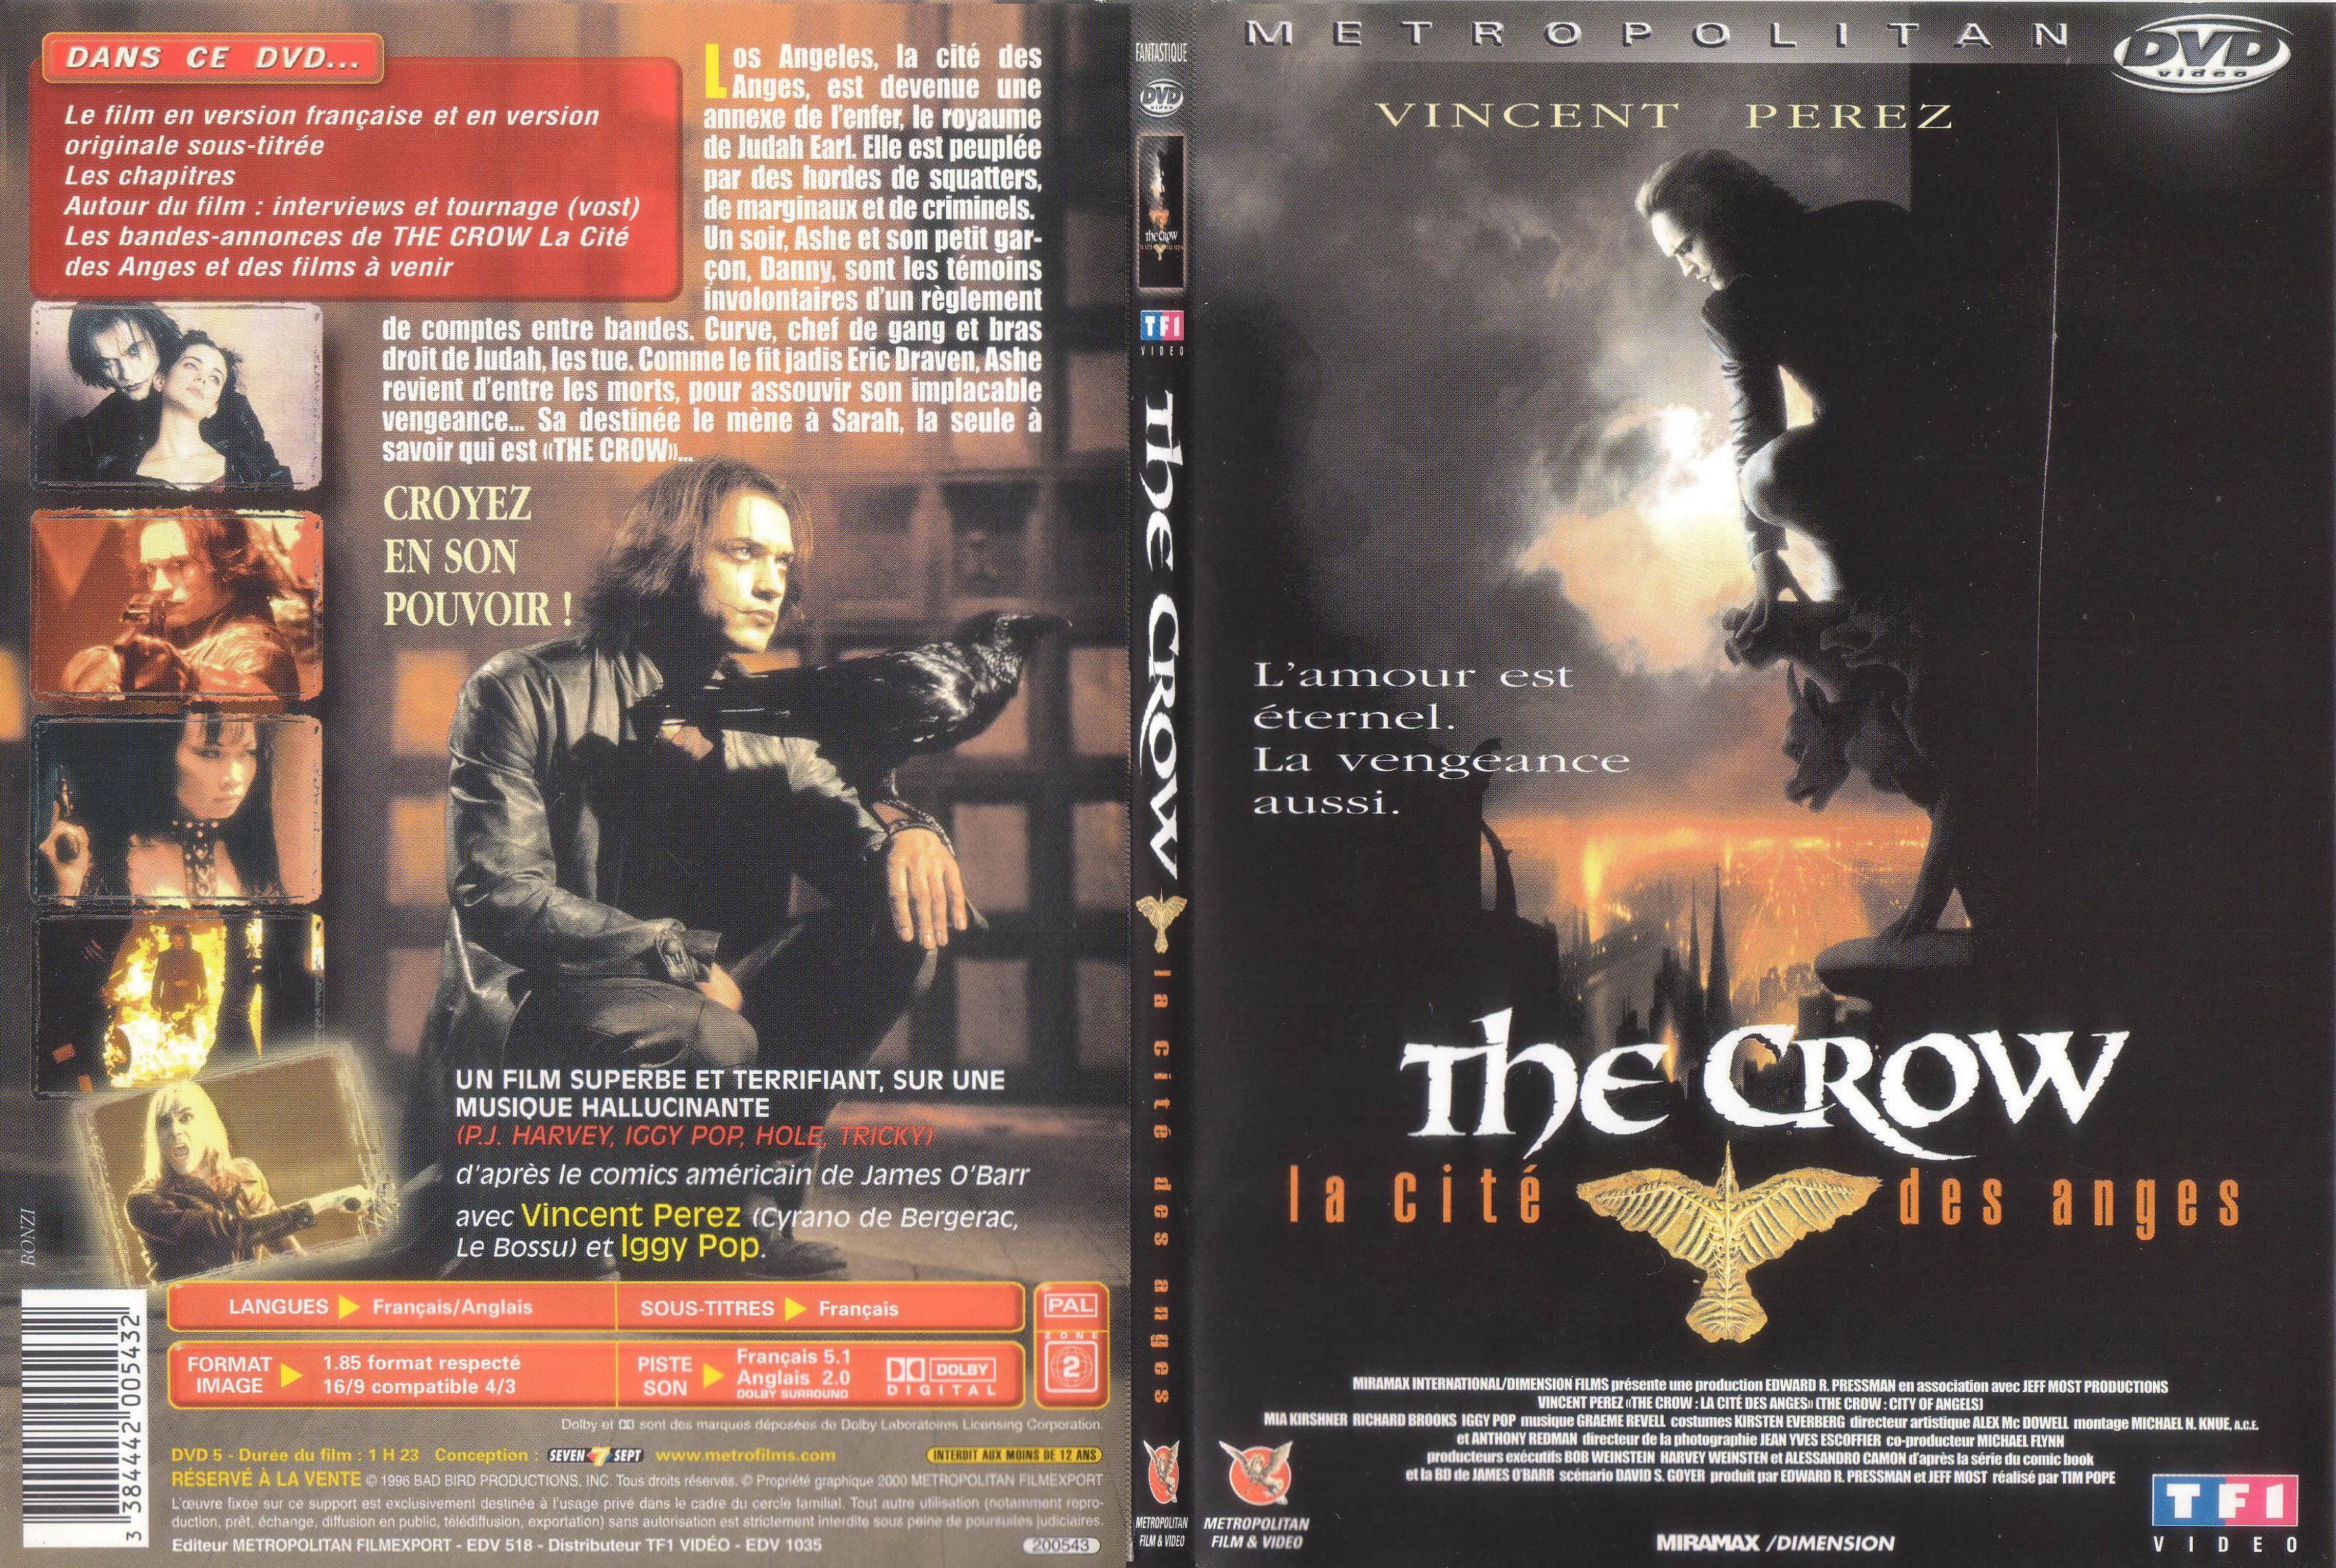 Jaquette DVD The crow la cite des anges - SLIM